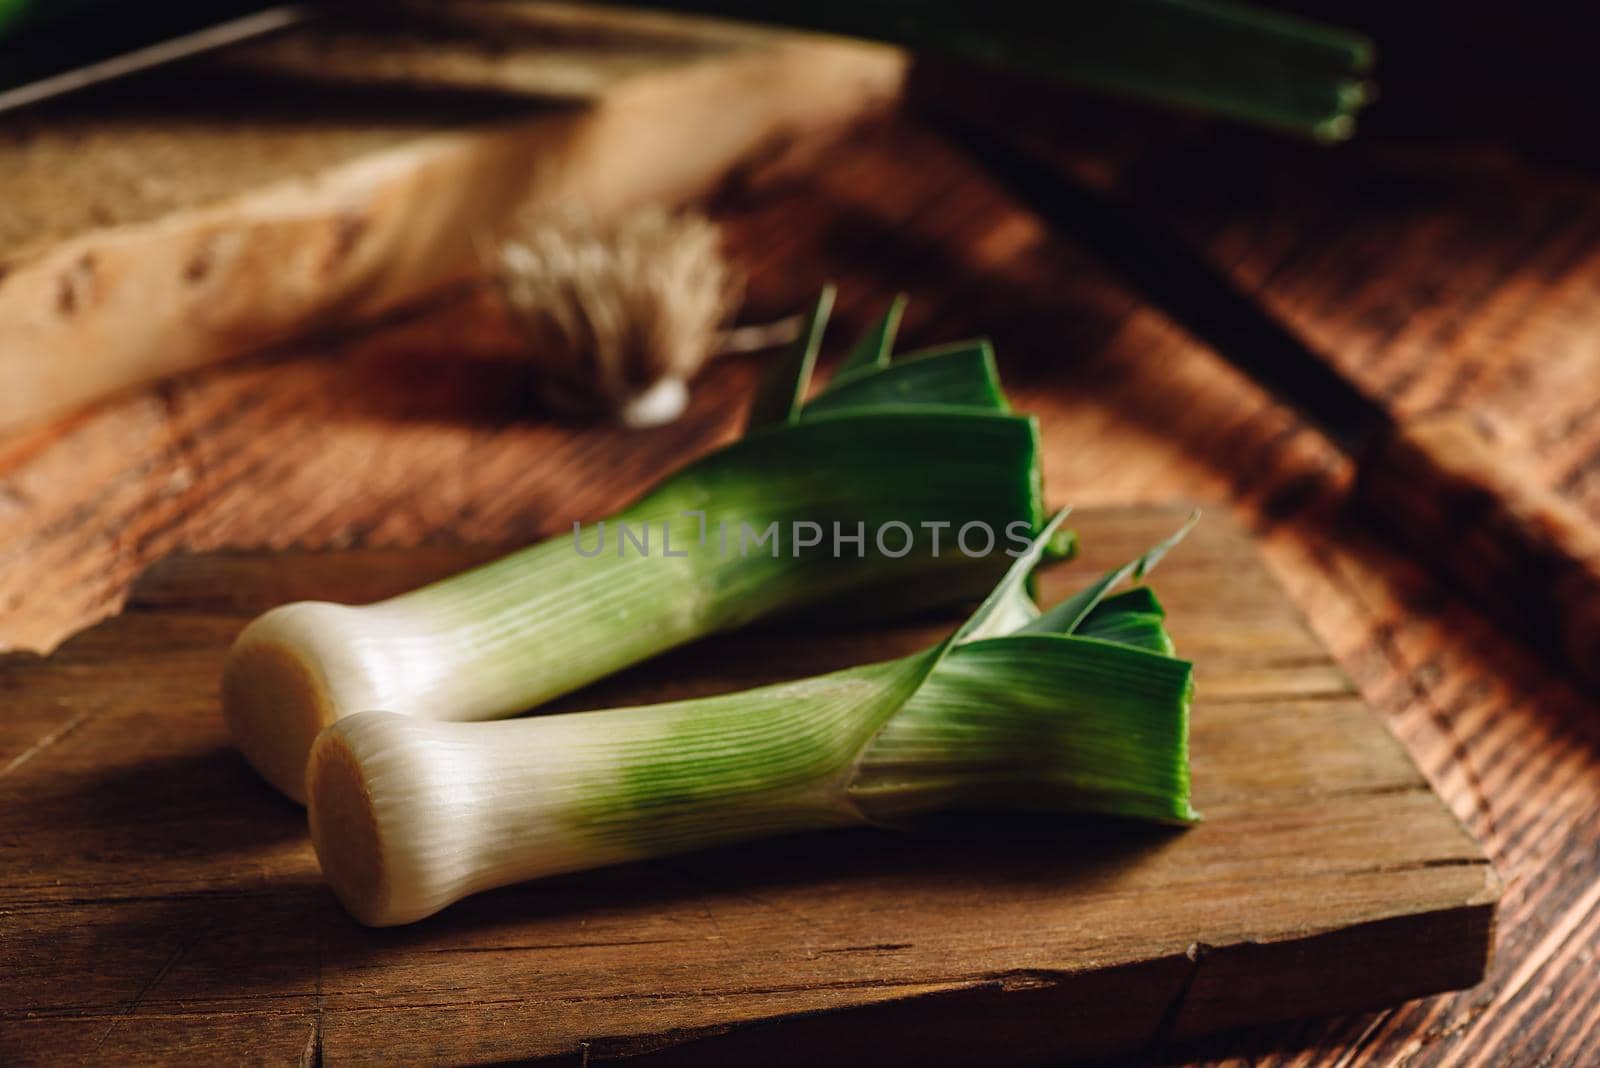 Fresh green leek on wooden cutting board